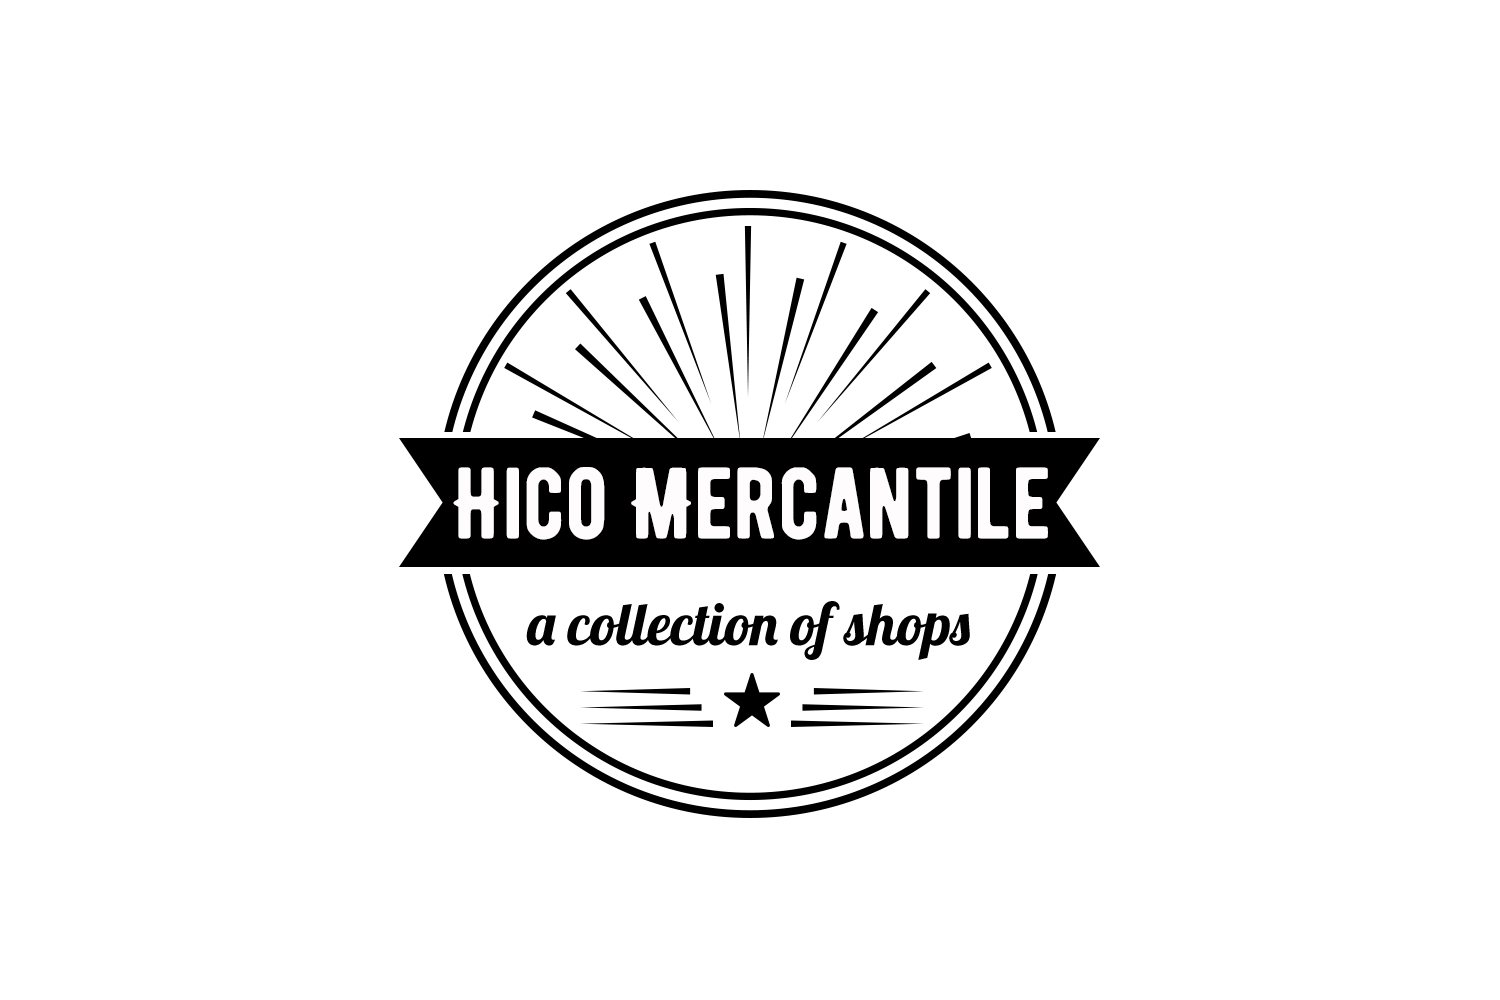 Hico Mercantile